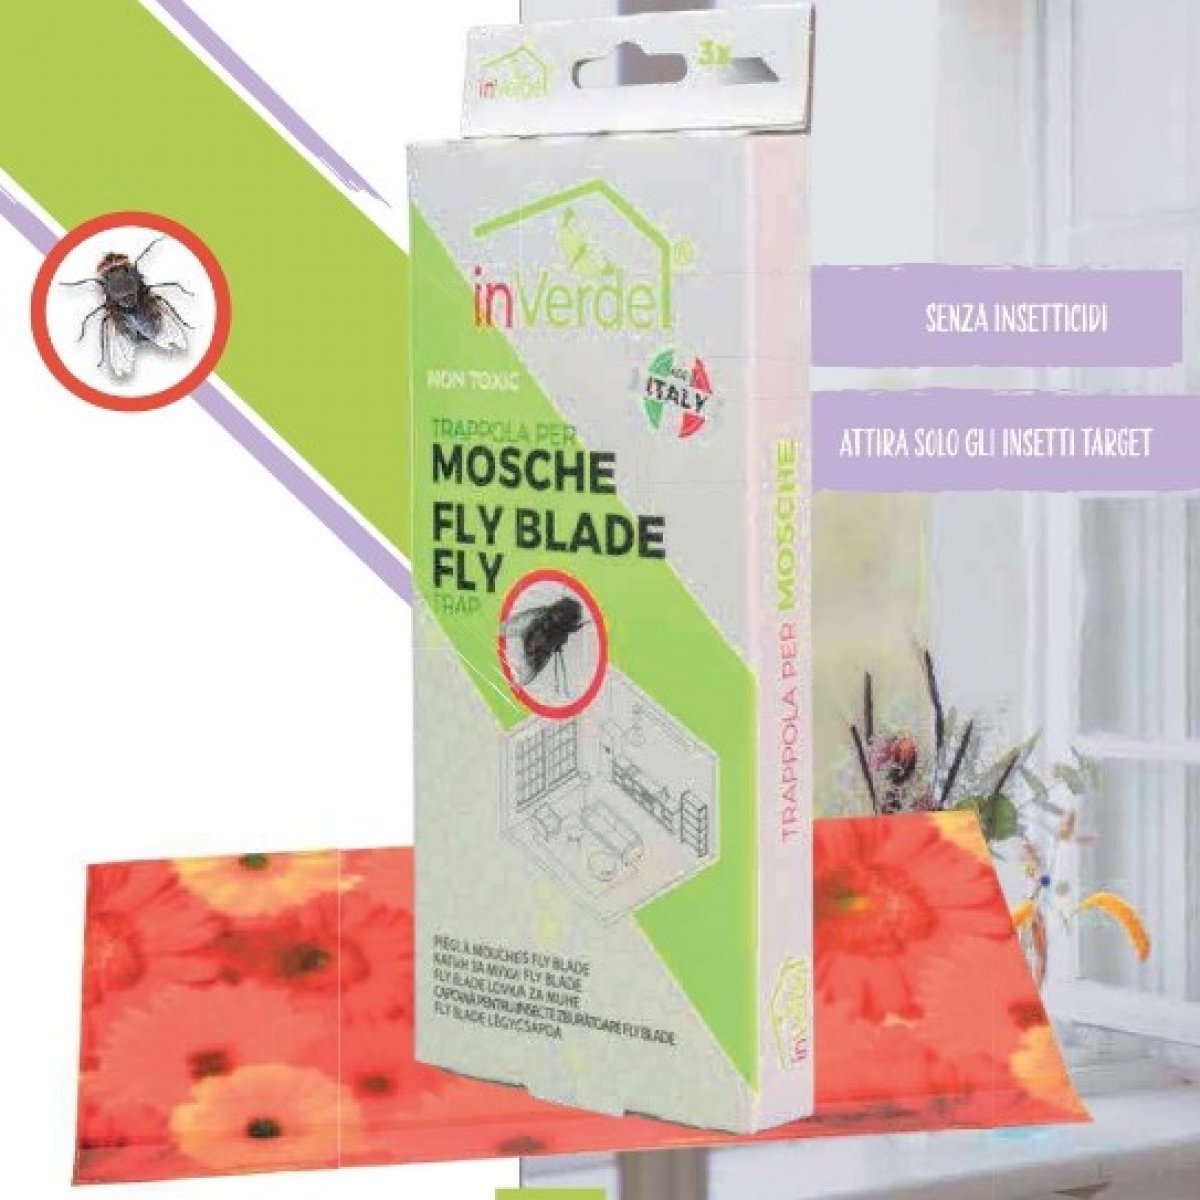 Trappola insetticida per mosche fly blade - Confezione: 3 trappole in un flow-pack trasparente in plastica PP INVERDE